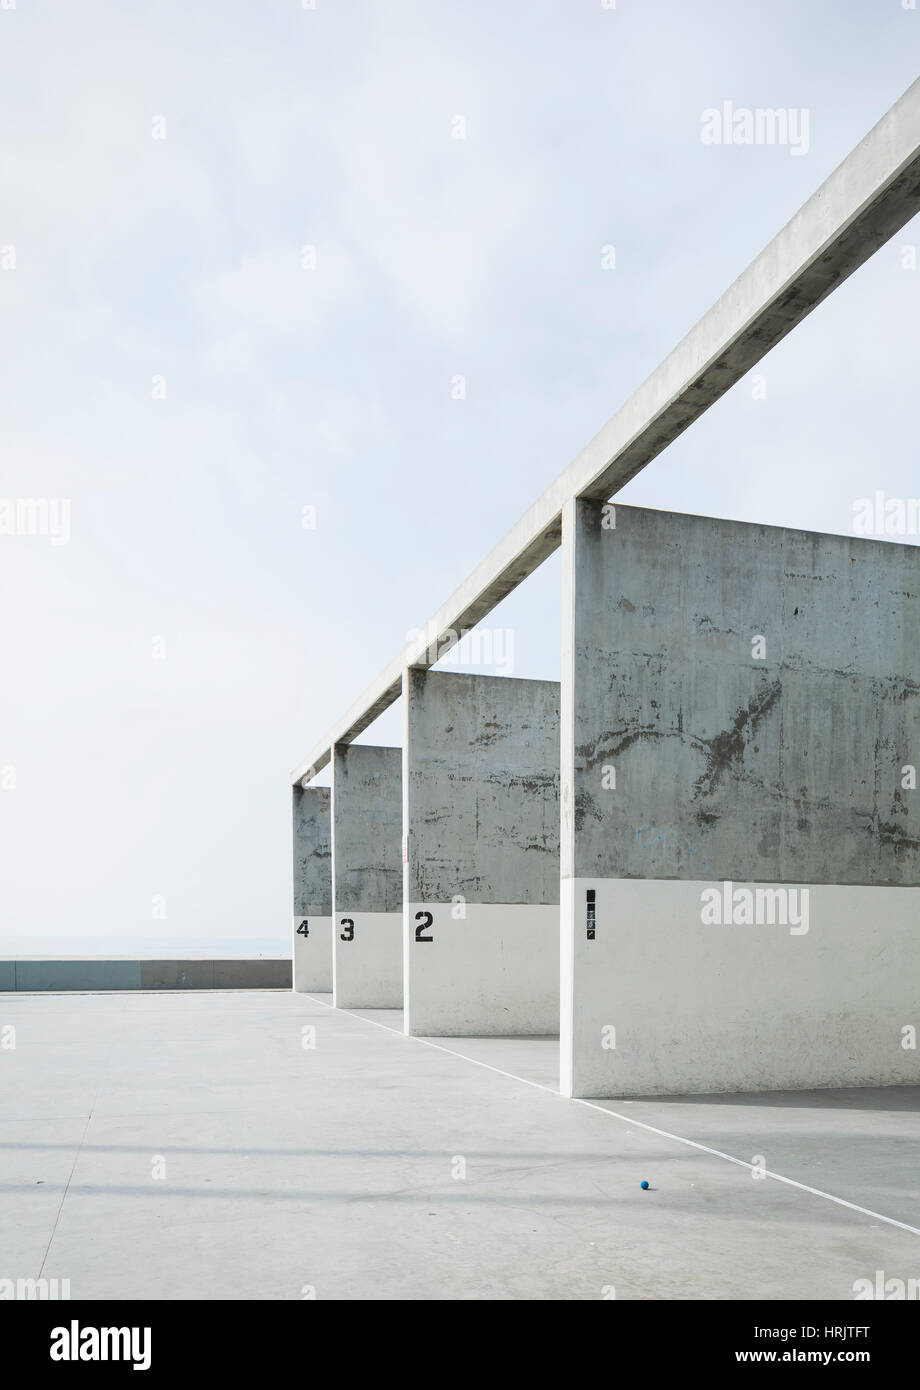 Nummerierte Betonpfeiler in einem Handball-Gericht vor einem blauen Himmel. Stockfoto